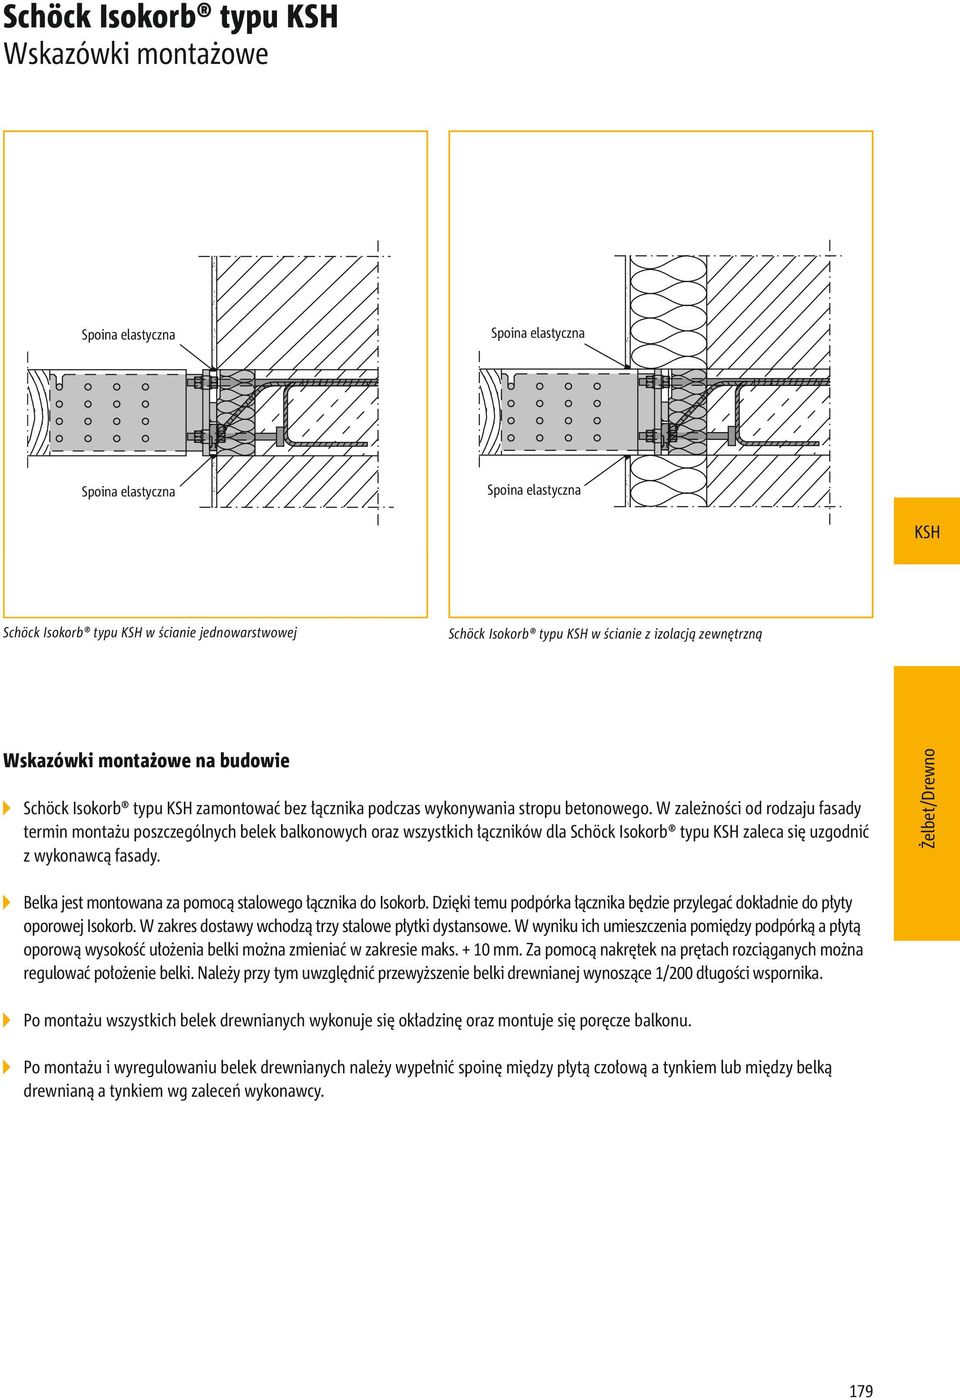 W zależności od rodzaju fasady termin montażu poszczególnych belek balkonowych oraz wszystkich łączników dla Schöck Isokorb typu zaleca się uzgodnić z wykonawcą fasady.